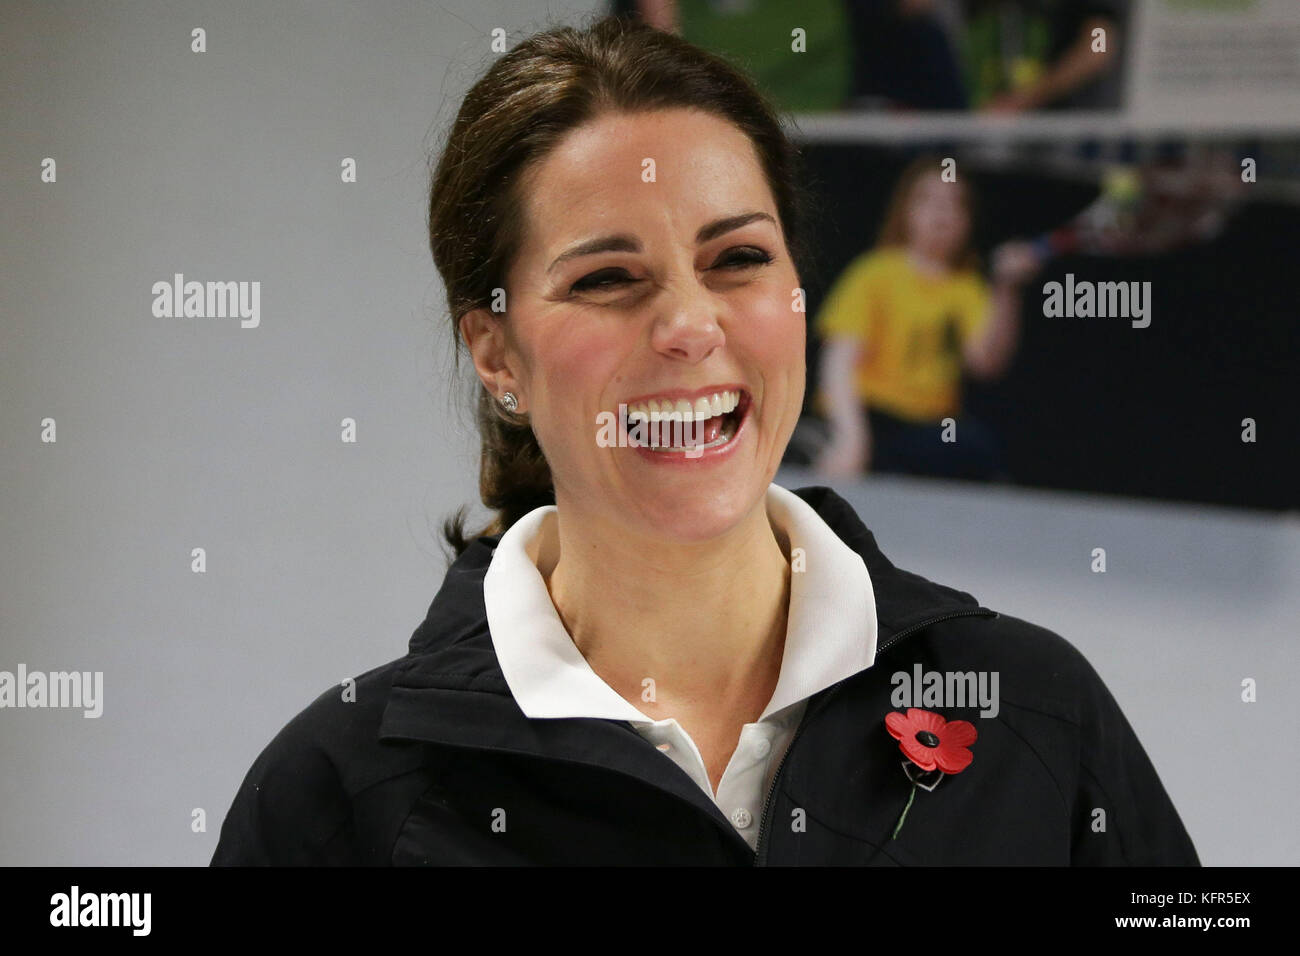 La duchesse de Cambridge rires lors d'une réunion d'information sur une visite à la lawn tennis association (LTA) à la National Tennis Center dans le sud-ouest de Londres. Banque D'Images